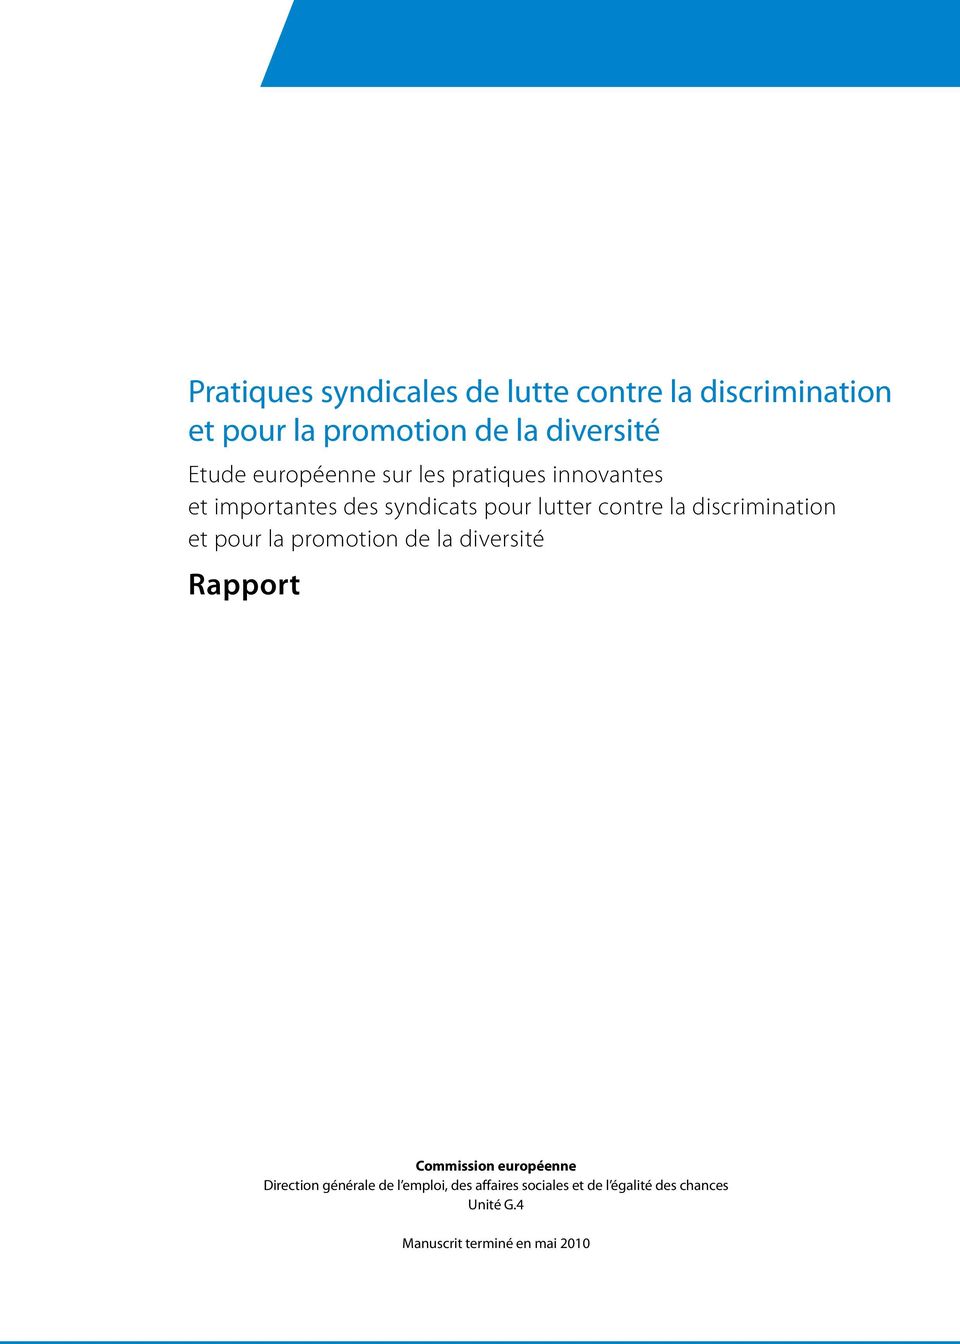 discrimination et pour la promotion de la diversité Rapport Commission européenne Direction